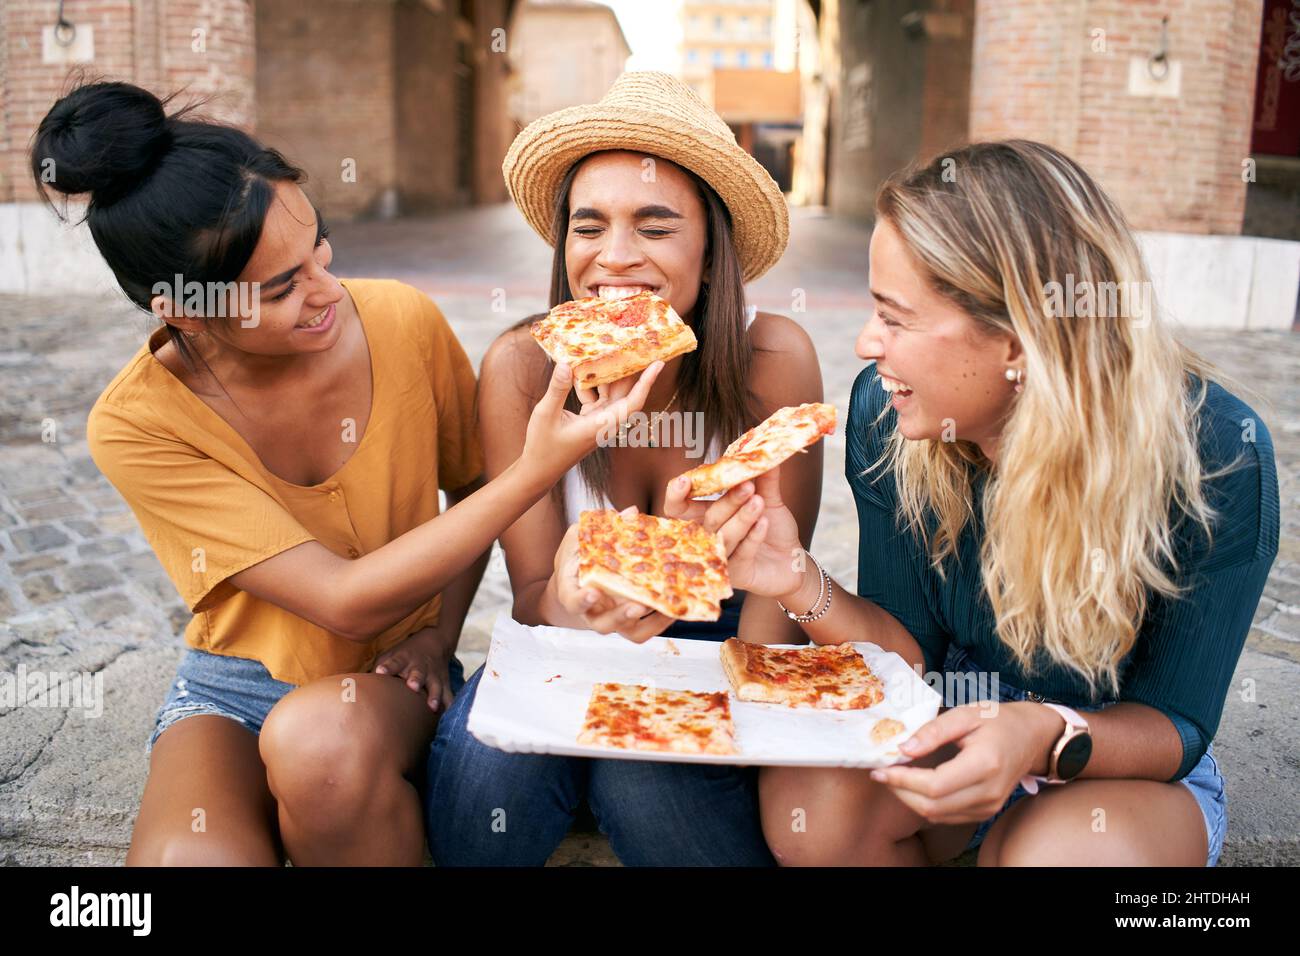 Buone amiche che mangiano pizza Street food in città. Gruppo turistico femminile di tre donne che si divertono. Una ragazza nutre l'altra. Stile di vita e. Foto Stock